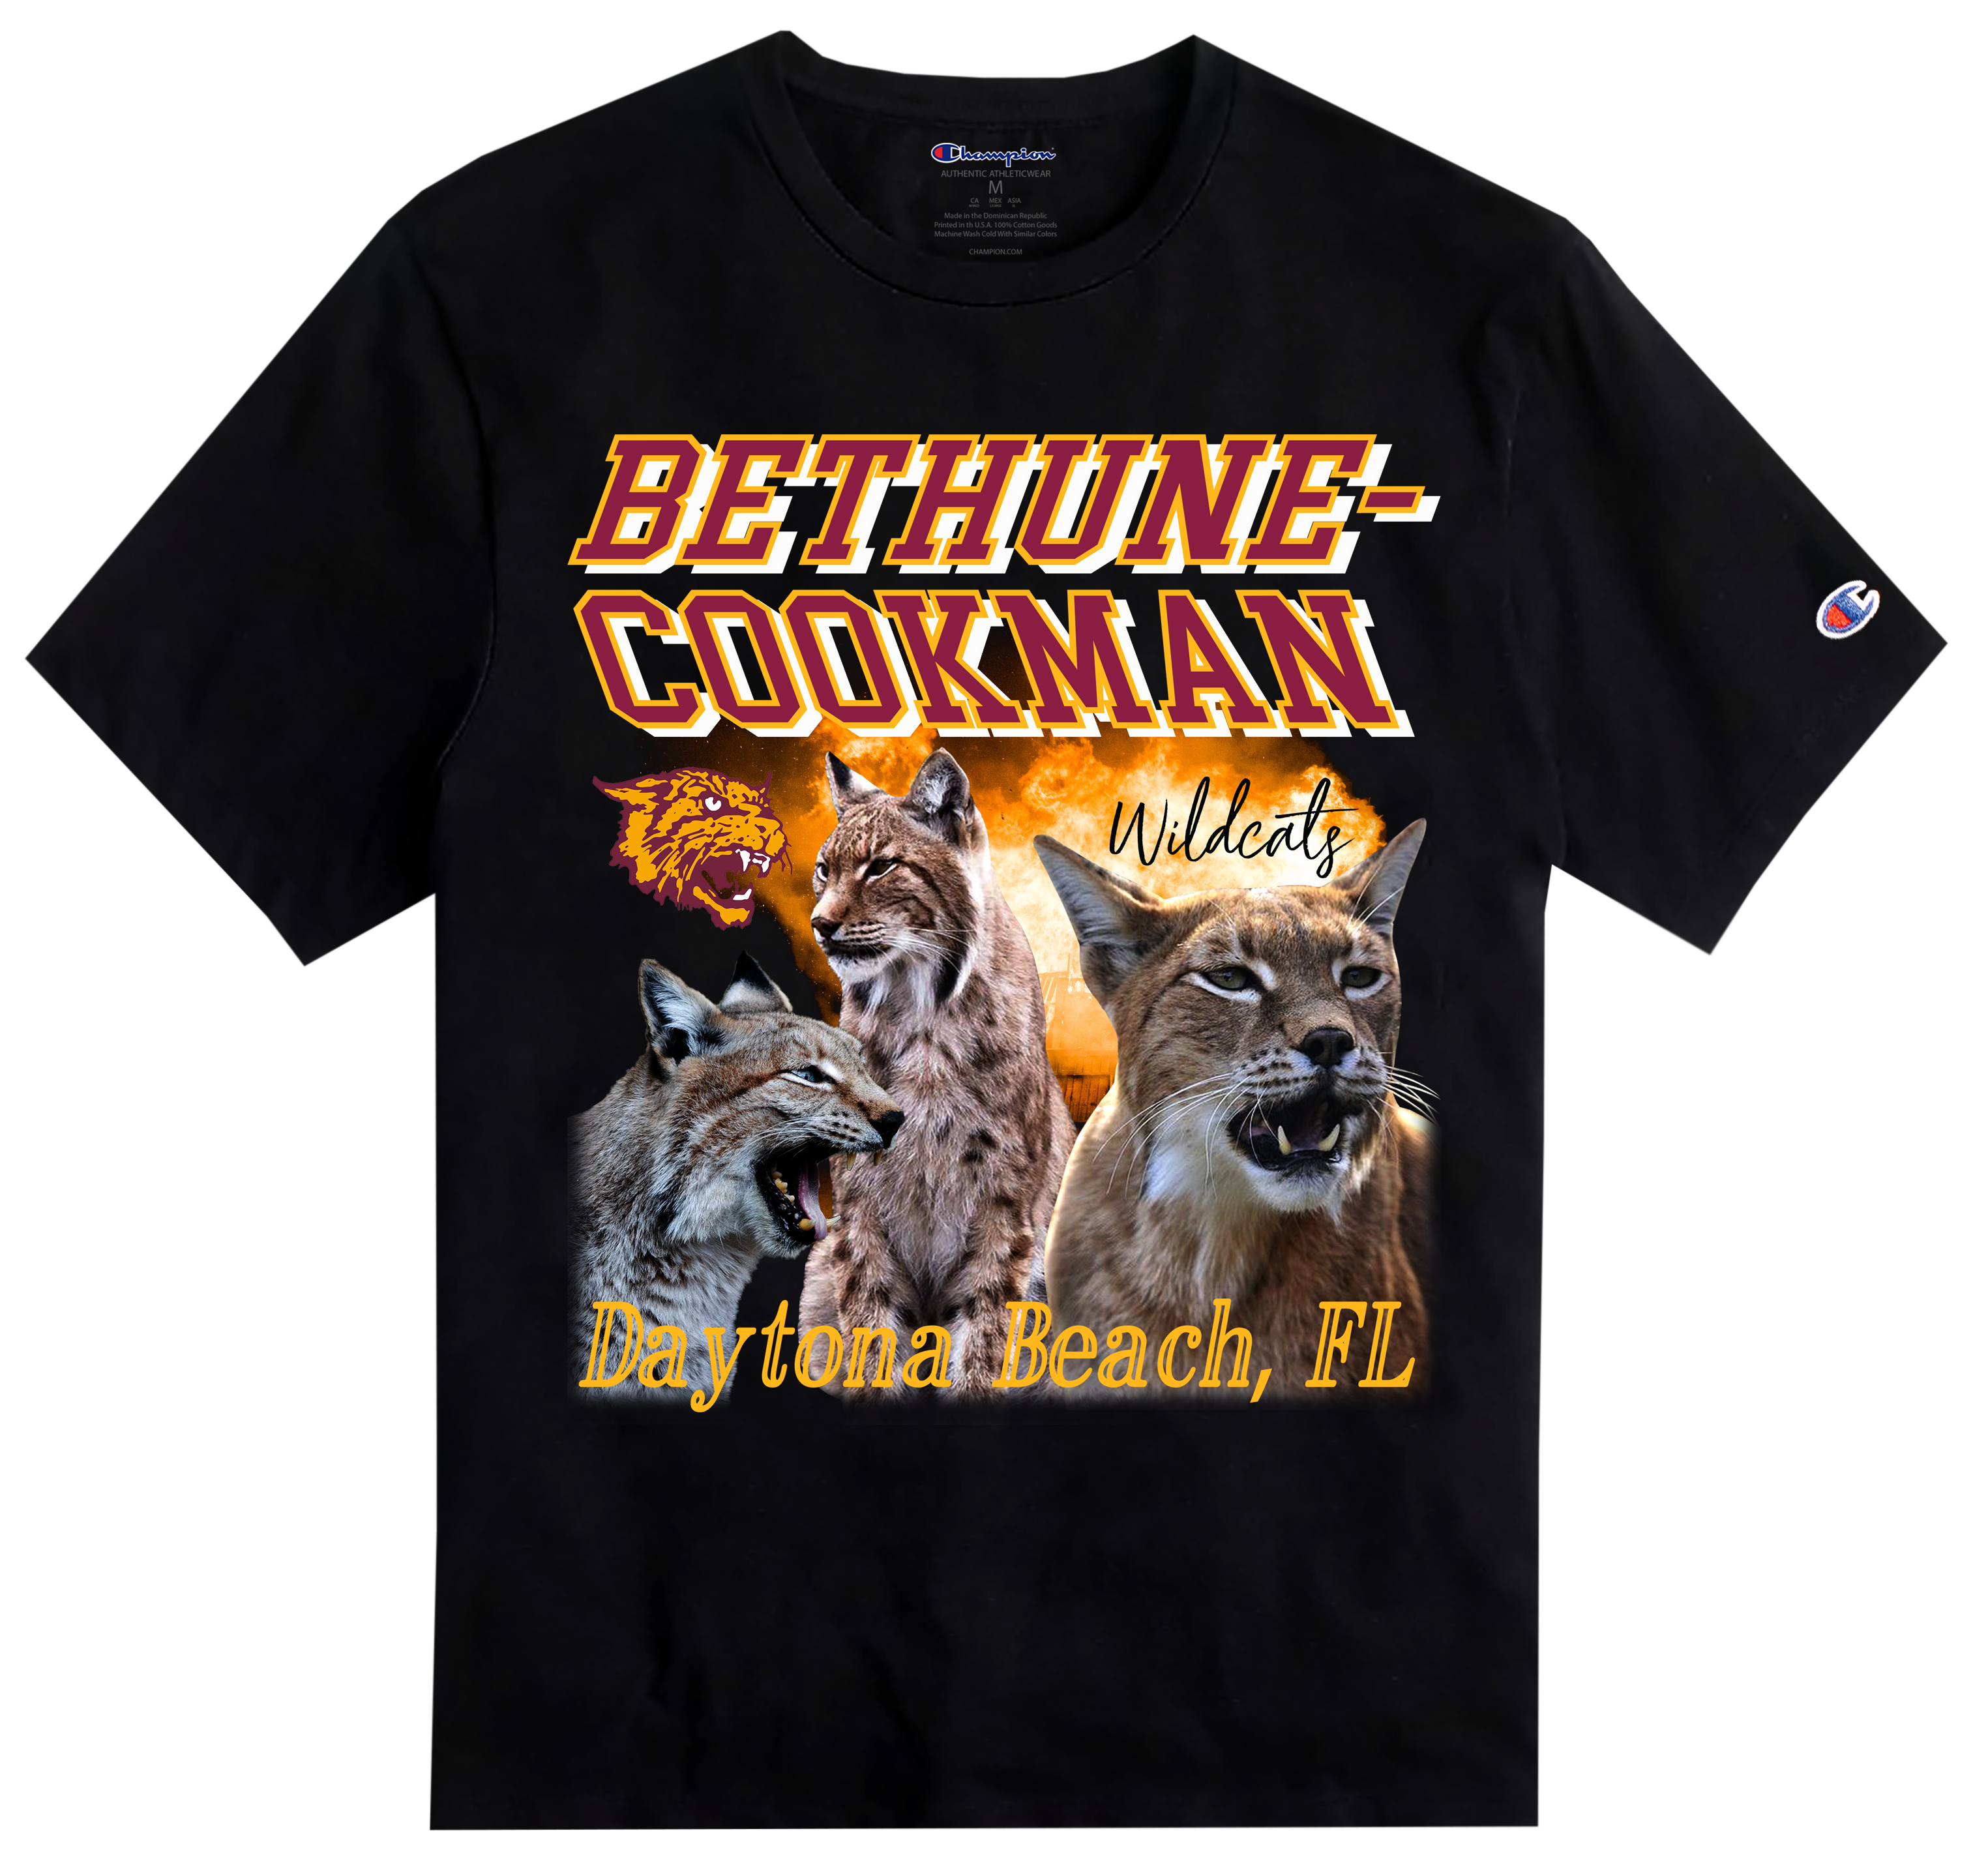 BCU X Champion Original HBCU Americana Rap Tee - Bethune-Cookman [B-CU]